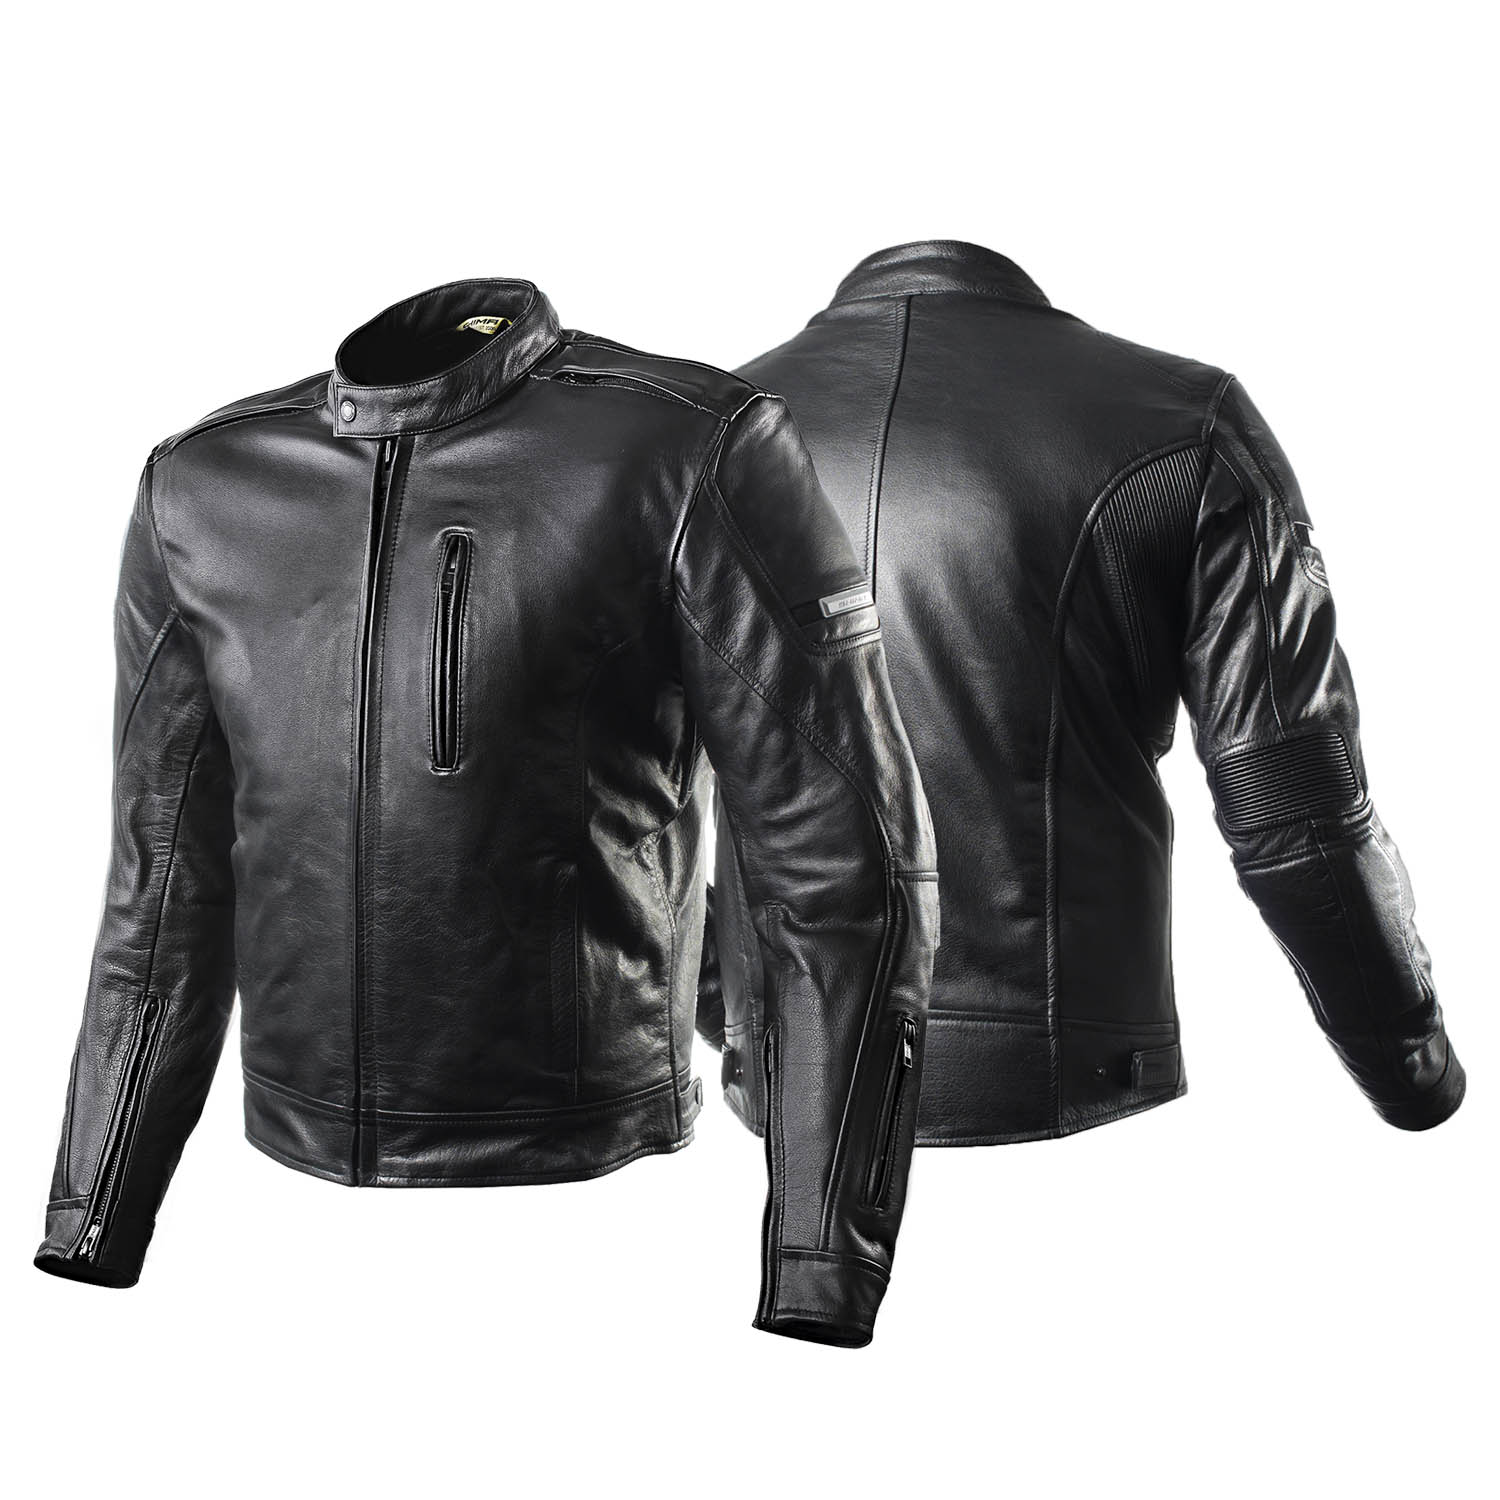 Куртка кожаная SHIMA HUNTER+ классическая для мотоциклистов вид спереди и сзади купить по низкой цене